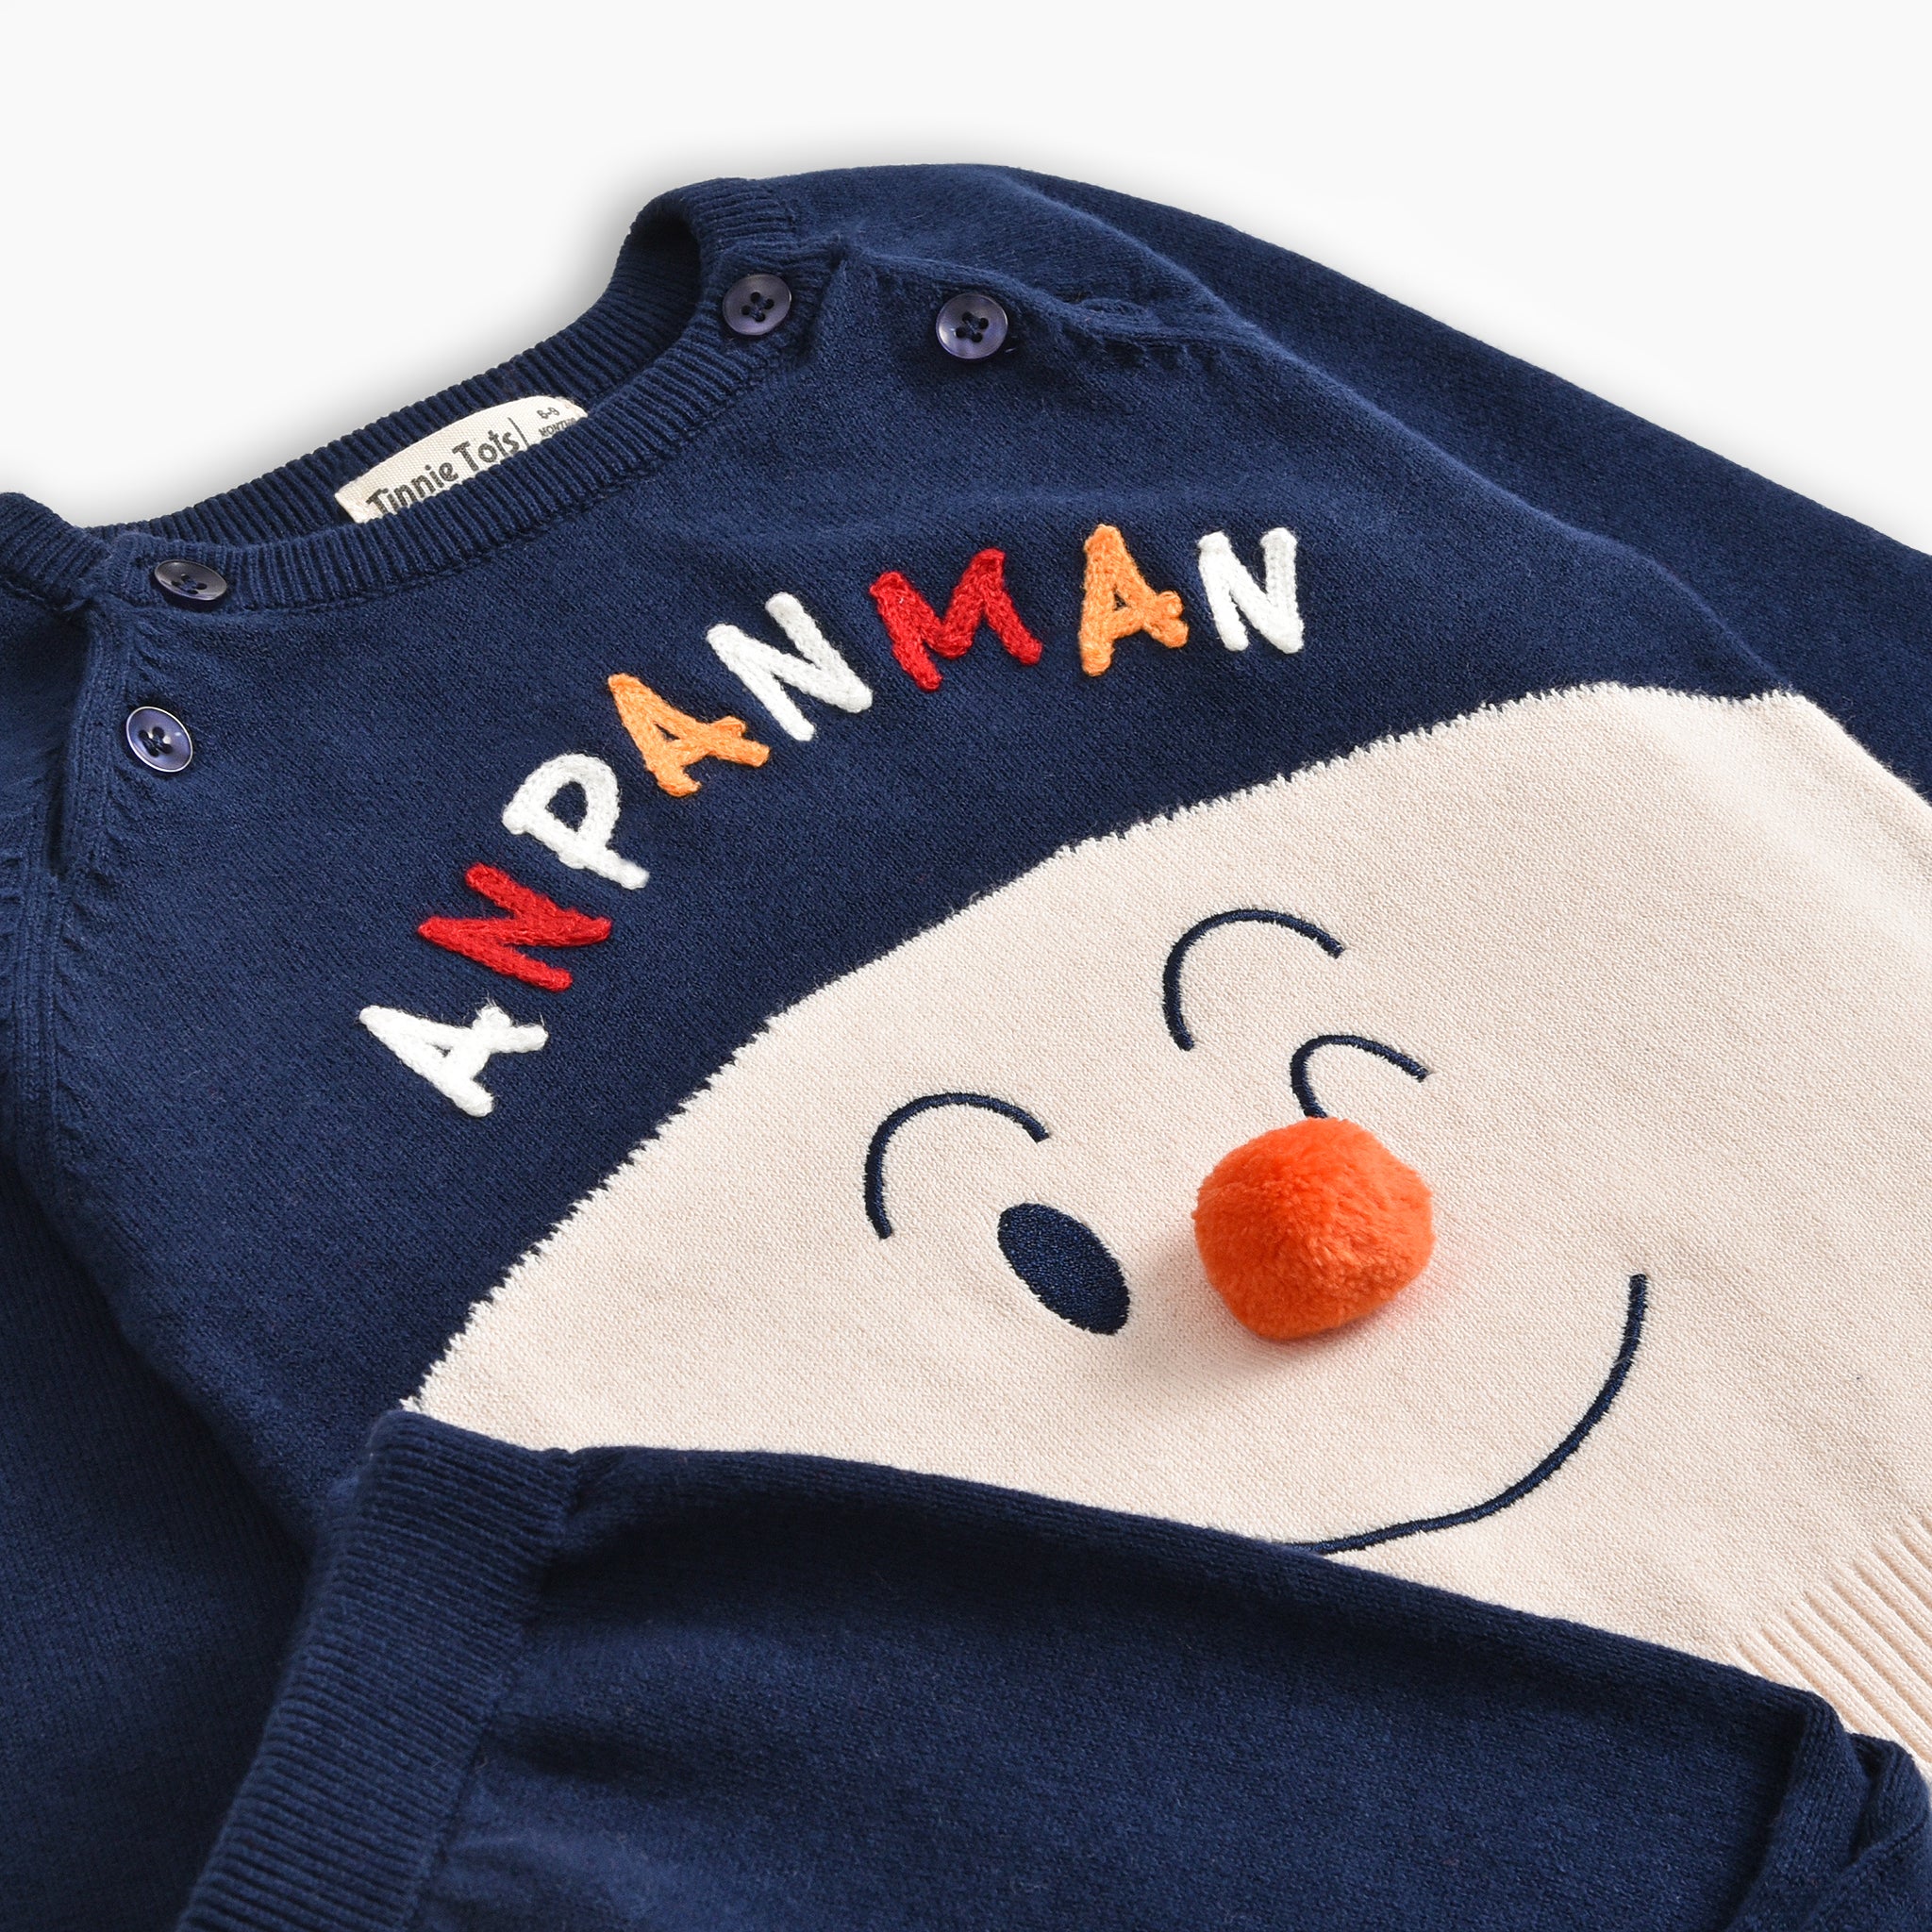 Anpanman Sweater Set (2pc)